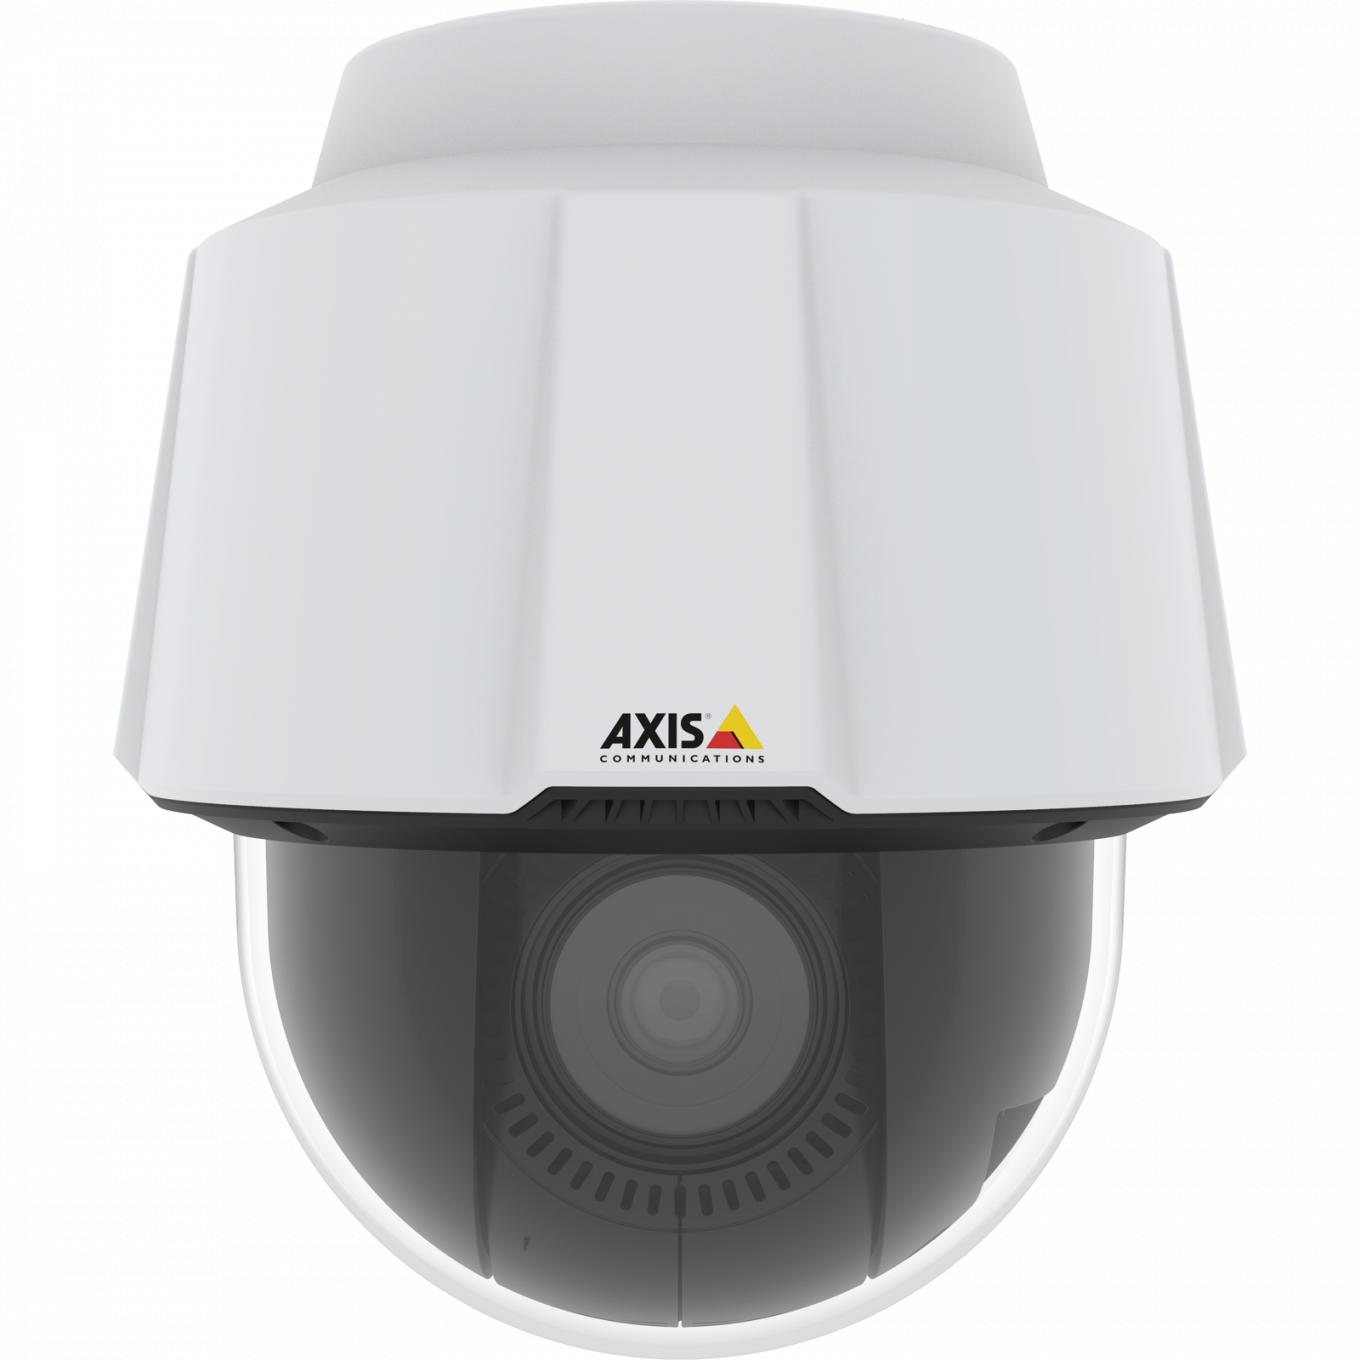  A câmera IP Camera AXIS P5655-E possui Zipstream com suporte a H.264 e H.265, firmware assinado e inicialização segura